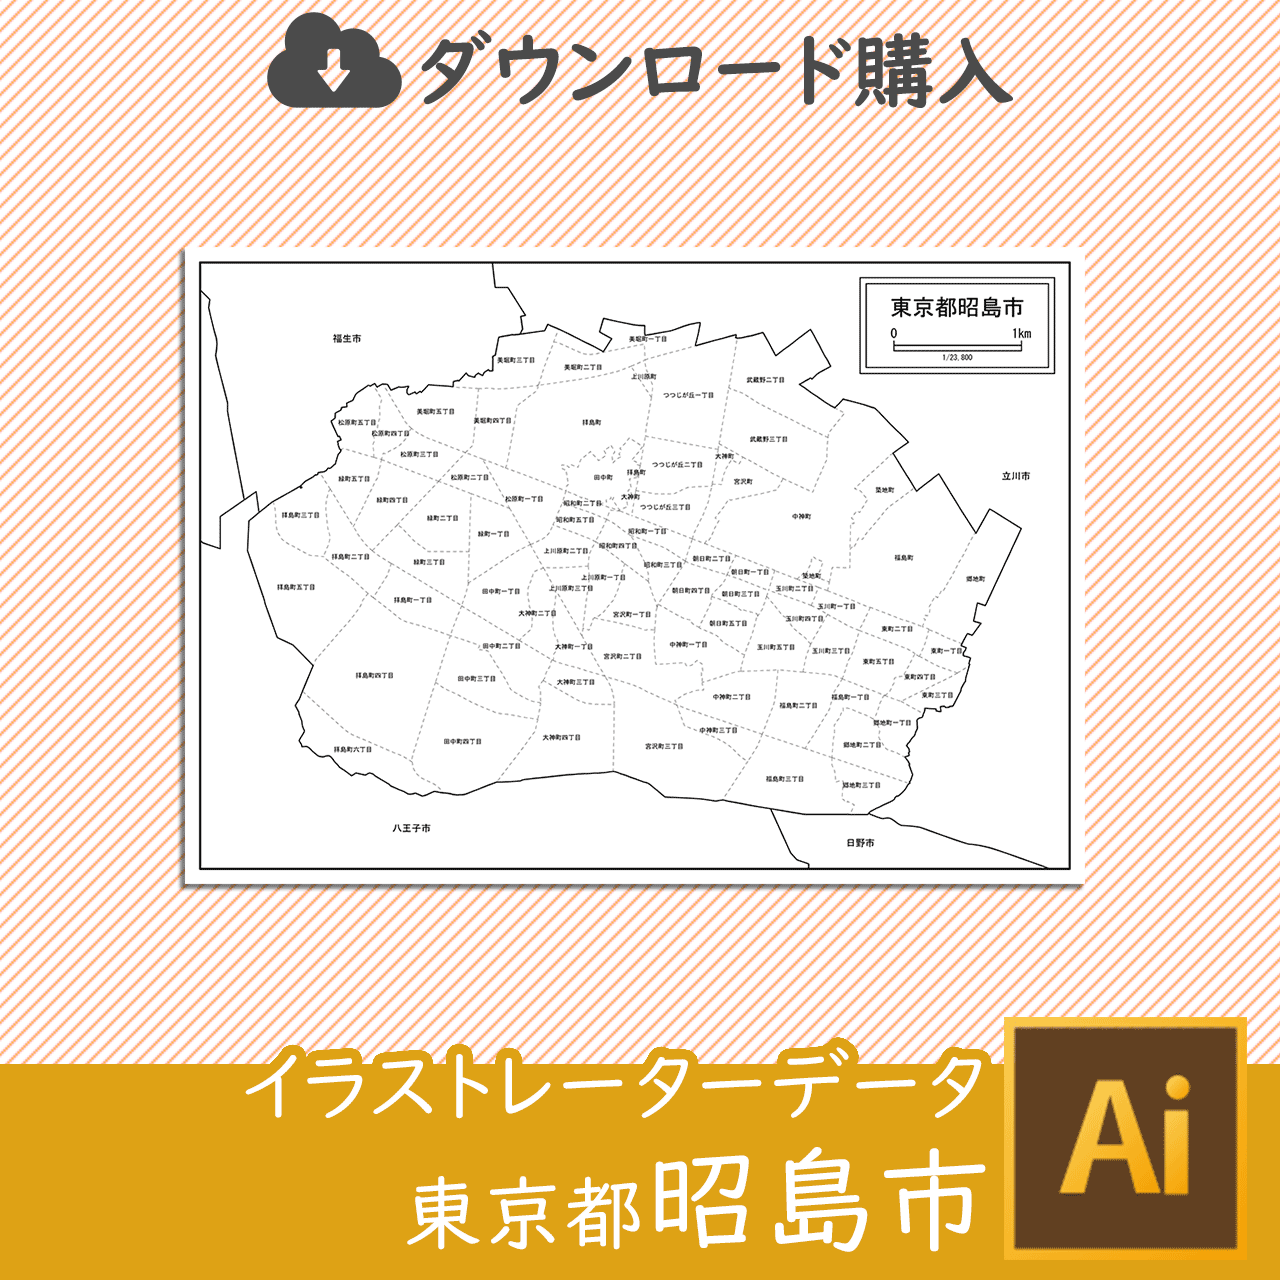 昭島市の白地図のサムネイル画像